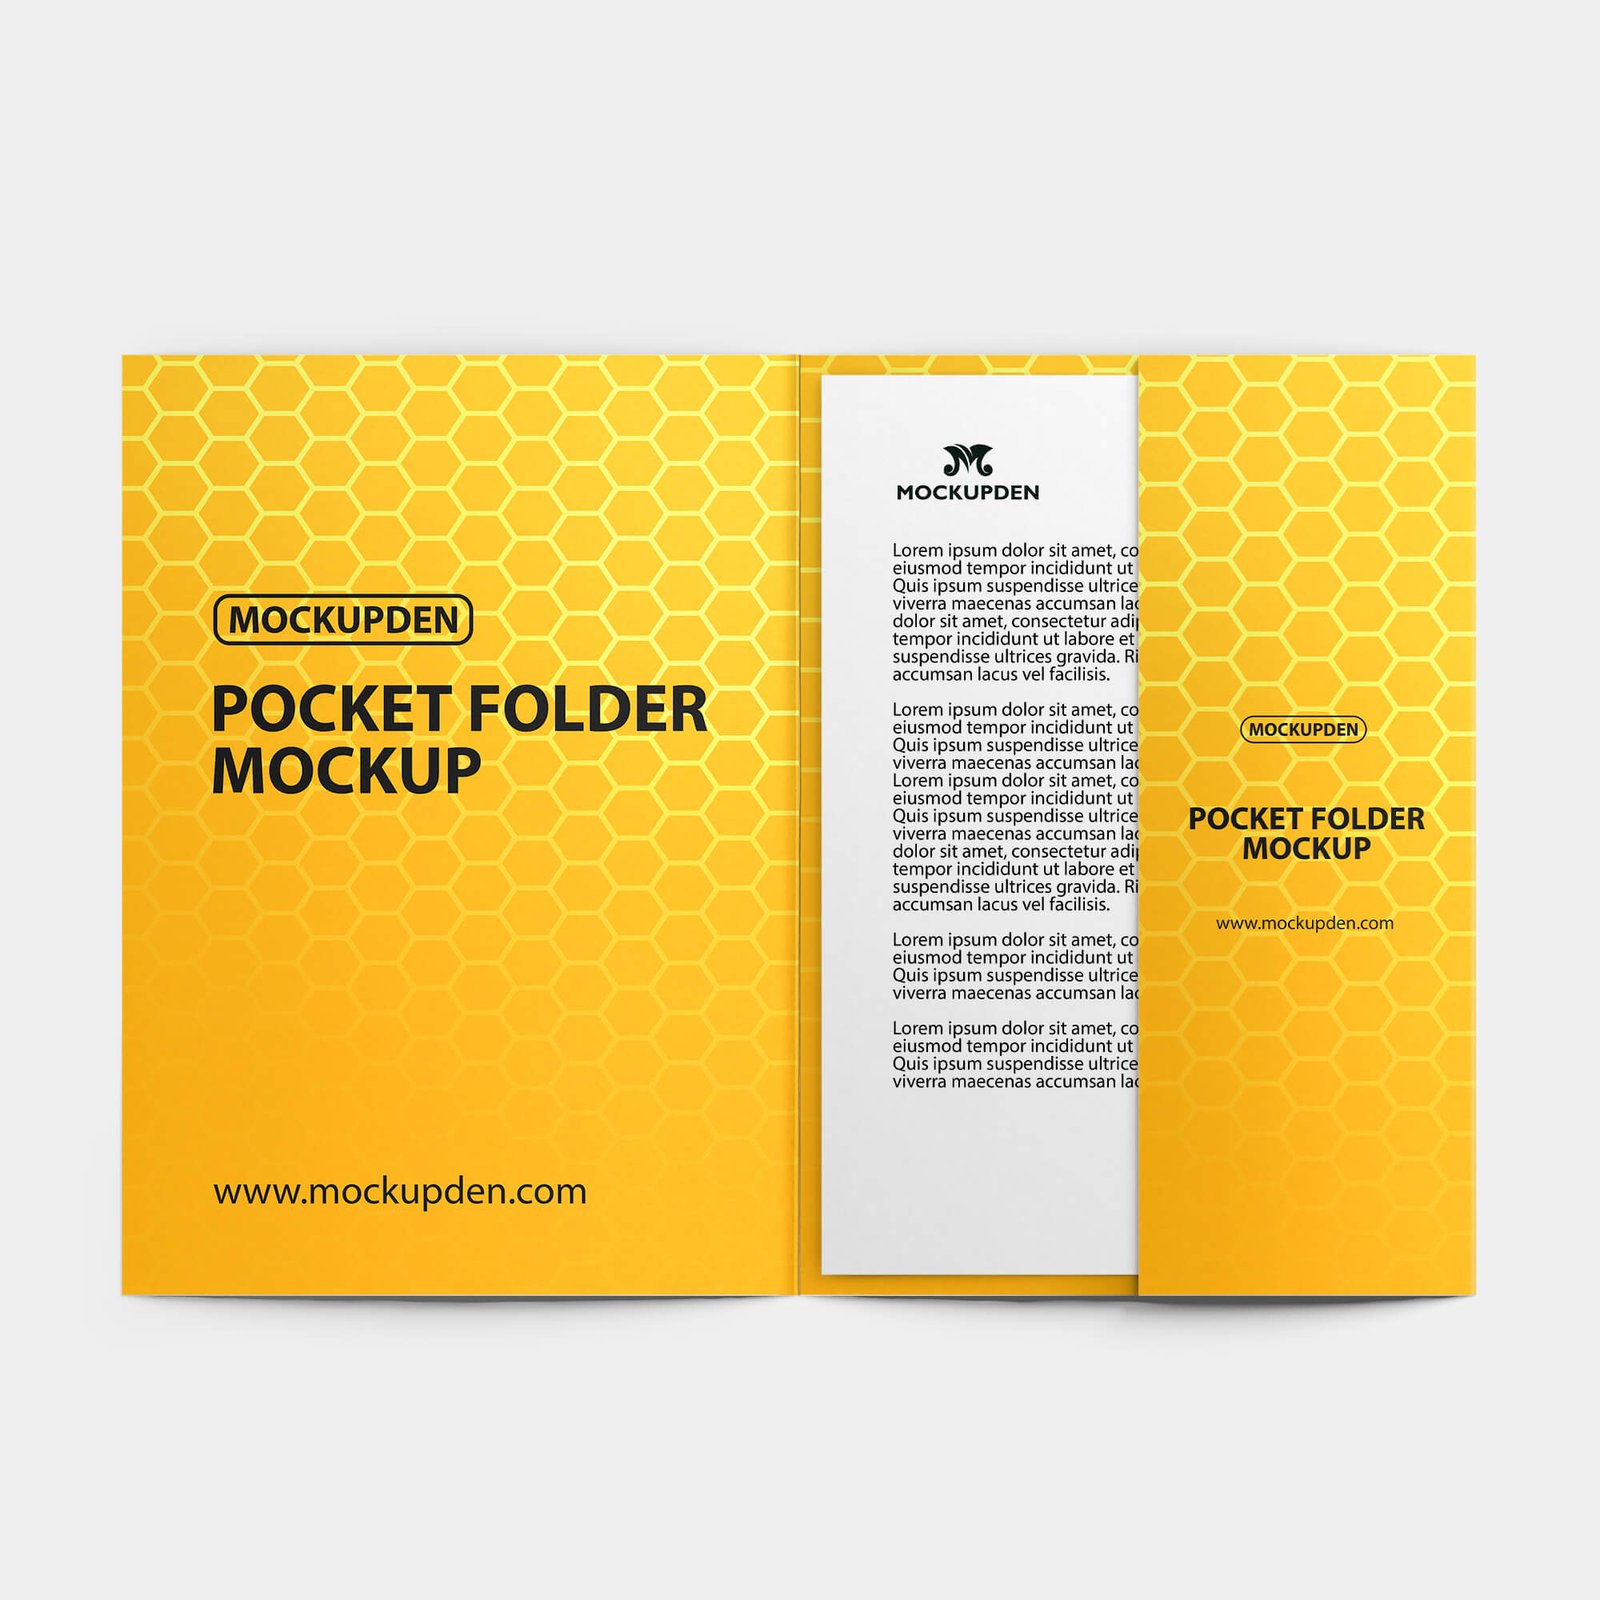 Design Free Pocket Folder Mockup PSD Template